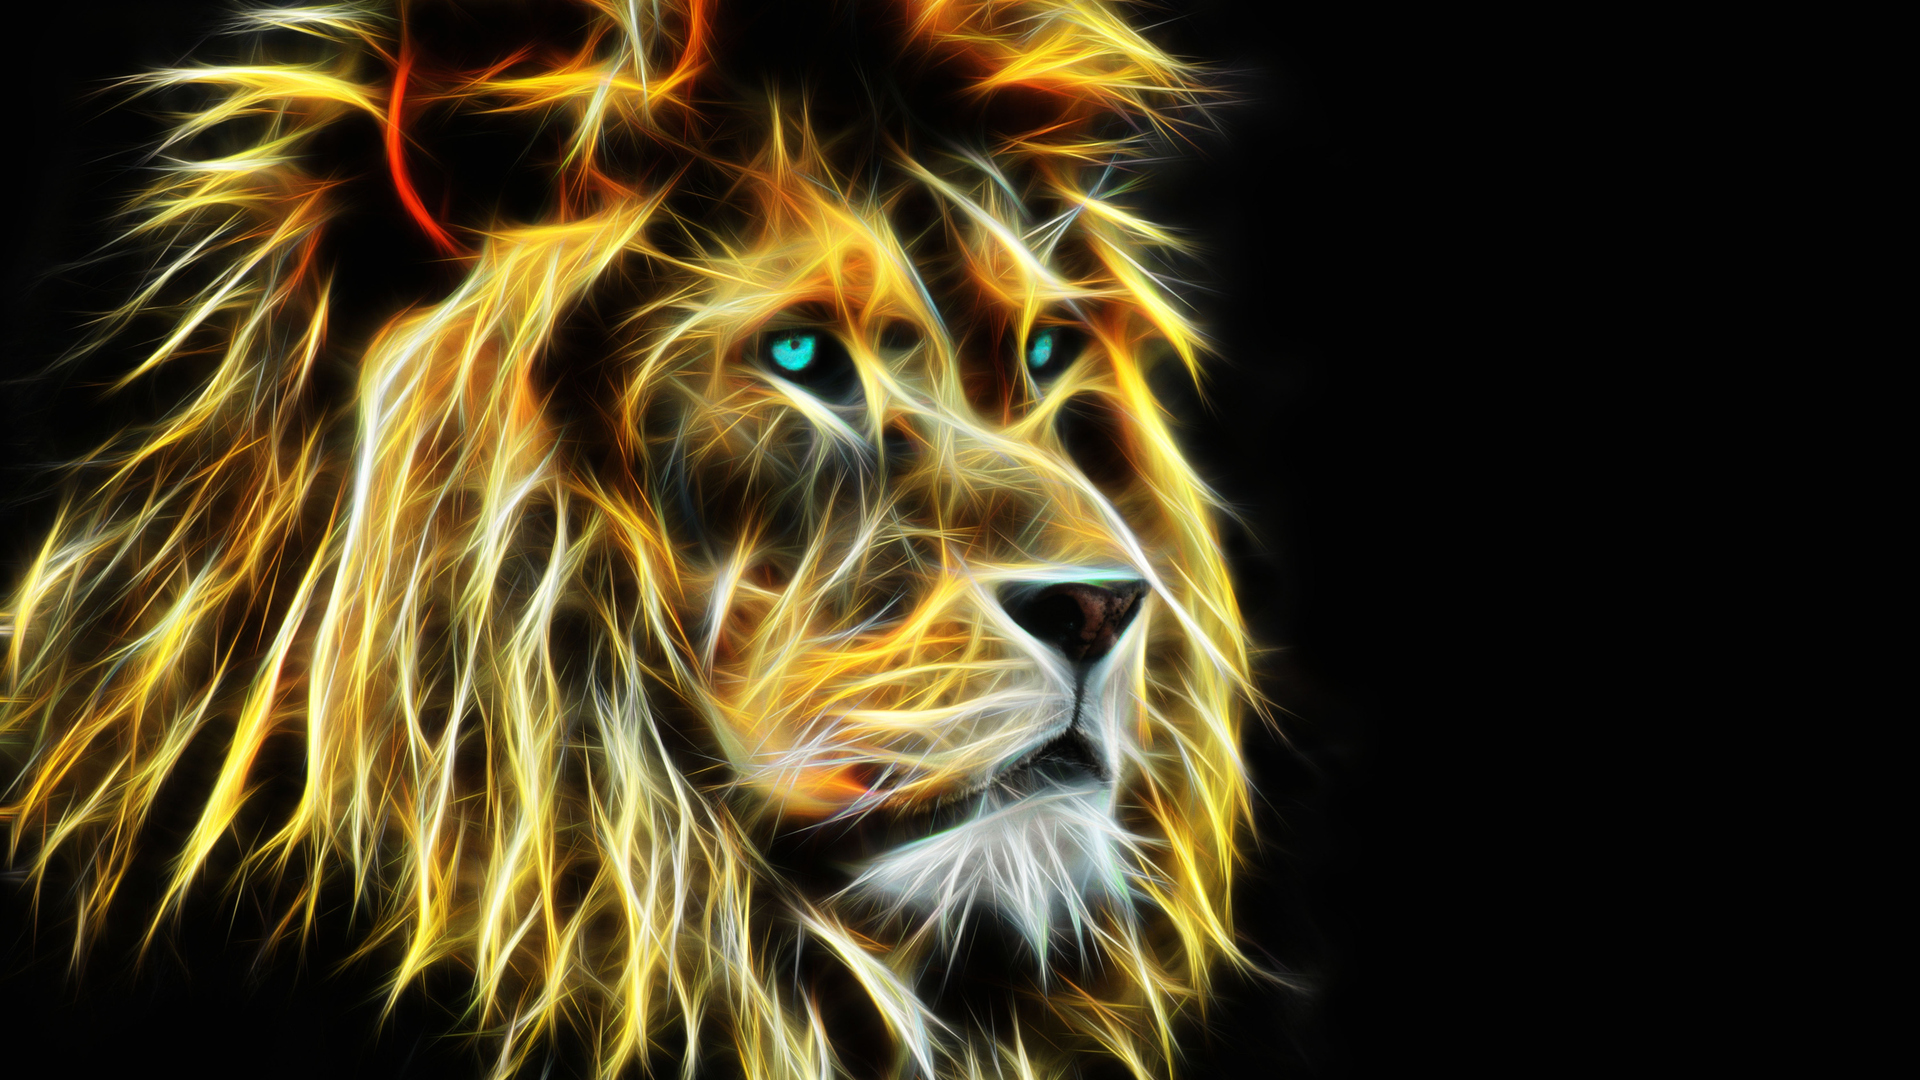 Download 3D Lion, A lion, Muzzle, 3d Wallpaper in 1920x1080 Resolution